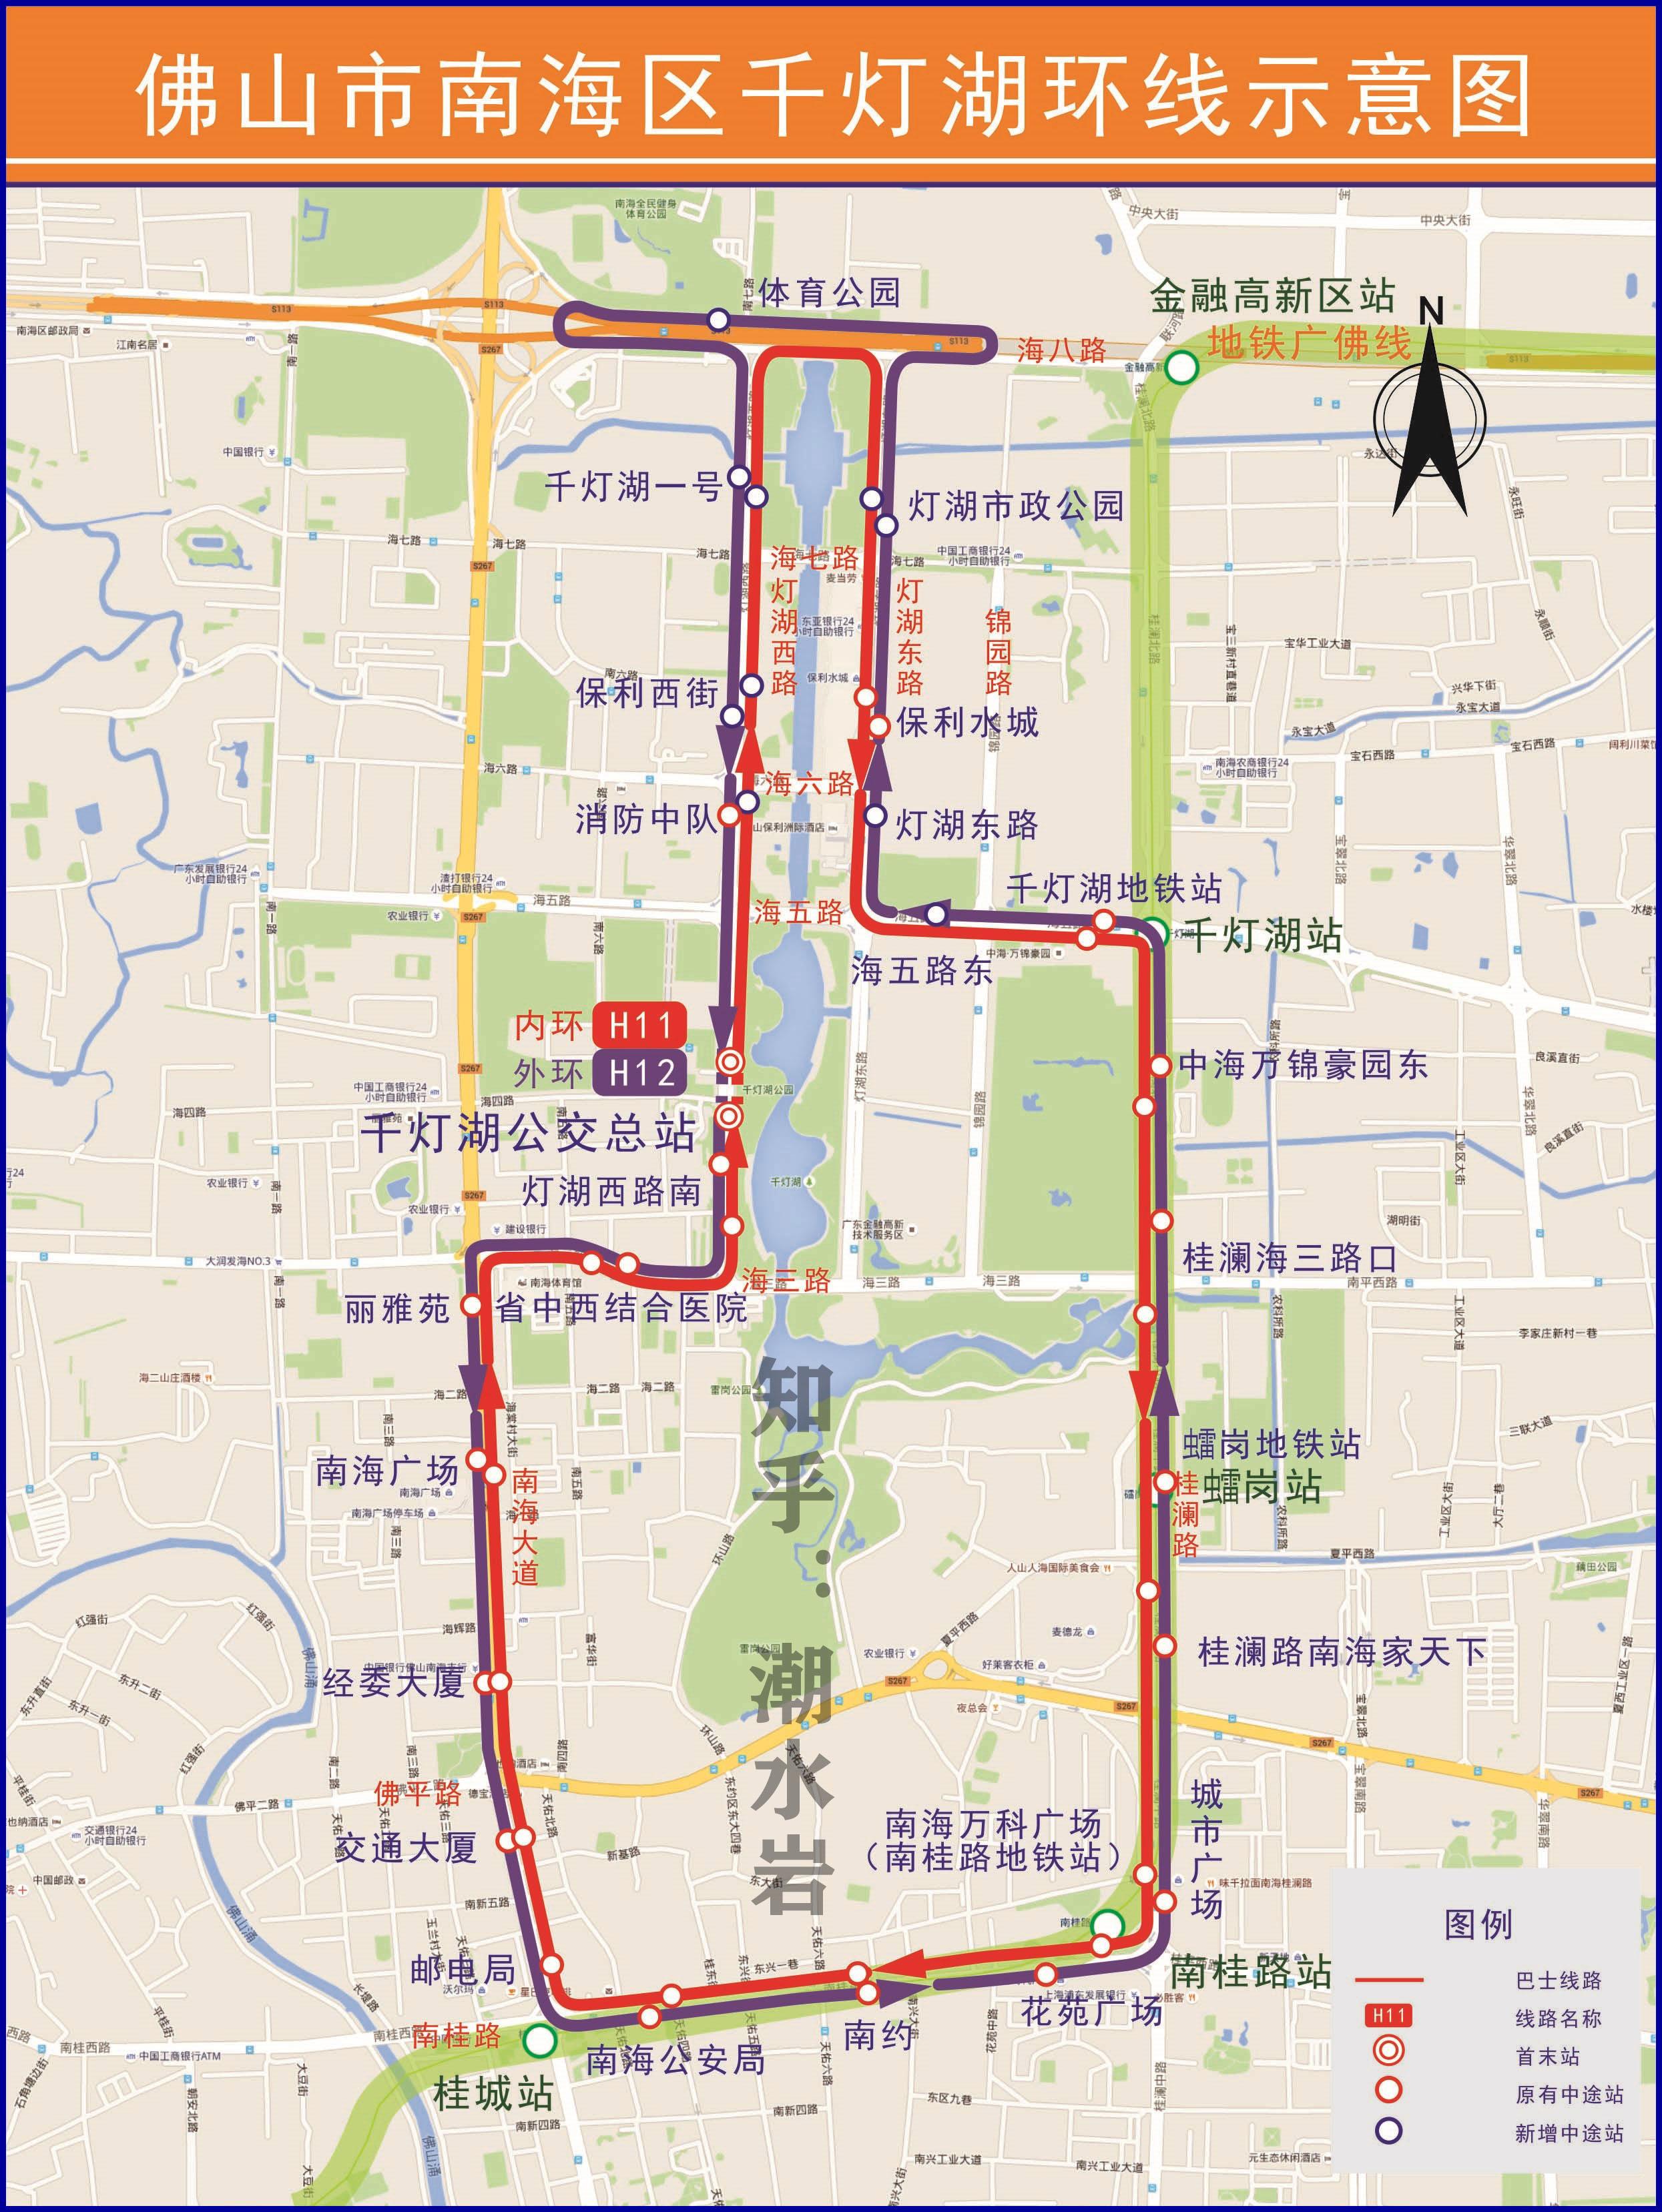 重庆快速路一纵线地图_重庆快速路一纵线_微信公众号文章